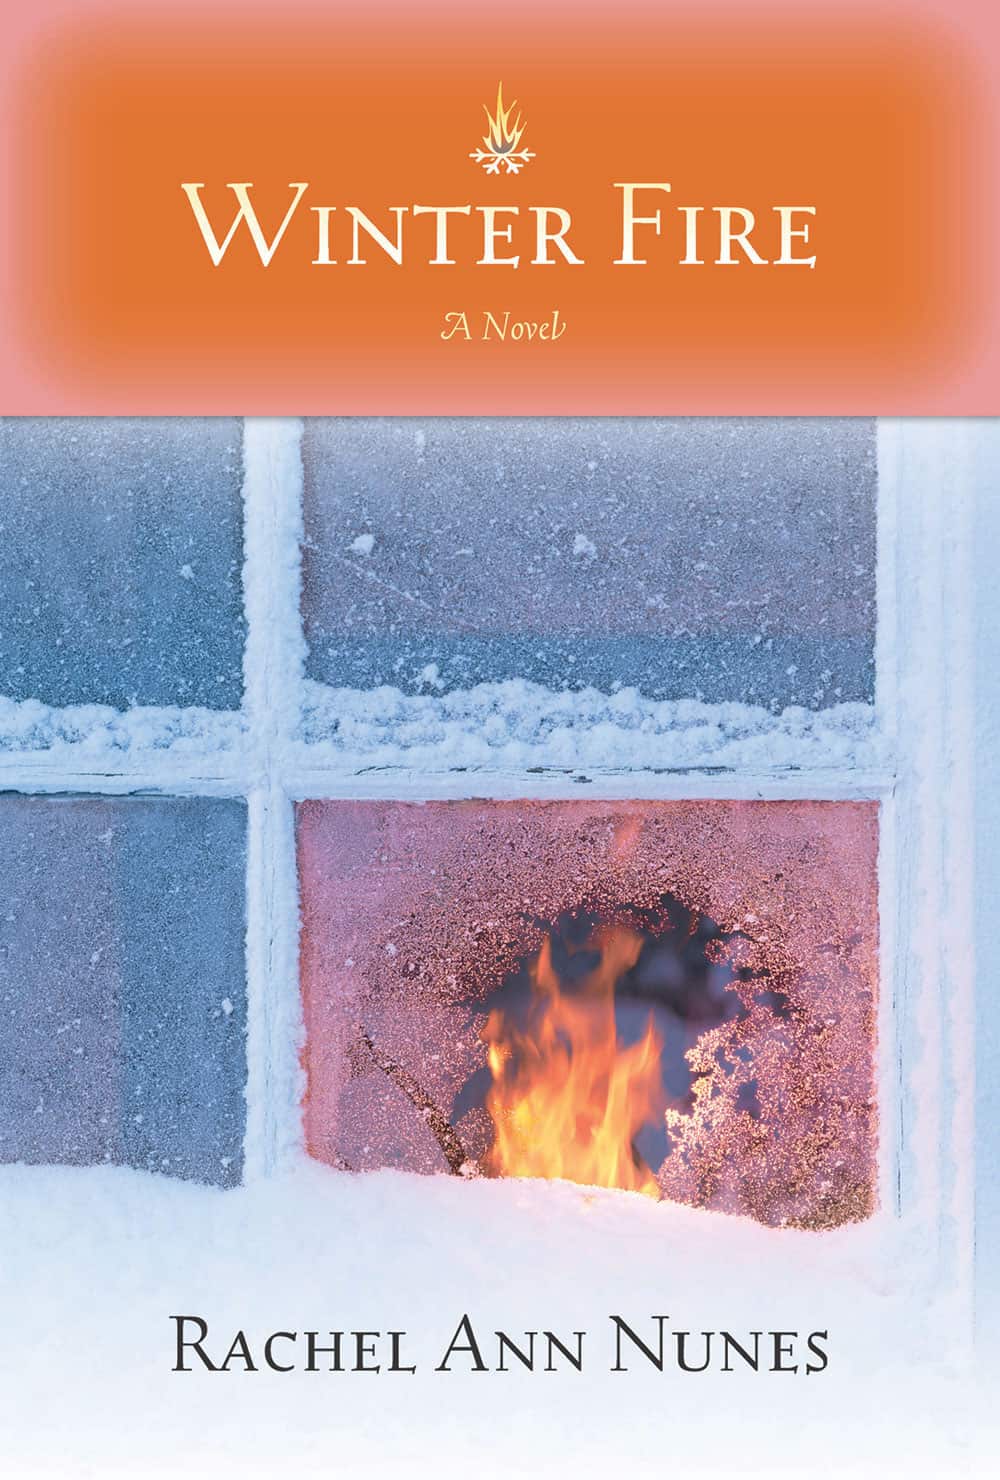 Winter Fire by Rachel Ann Nunes